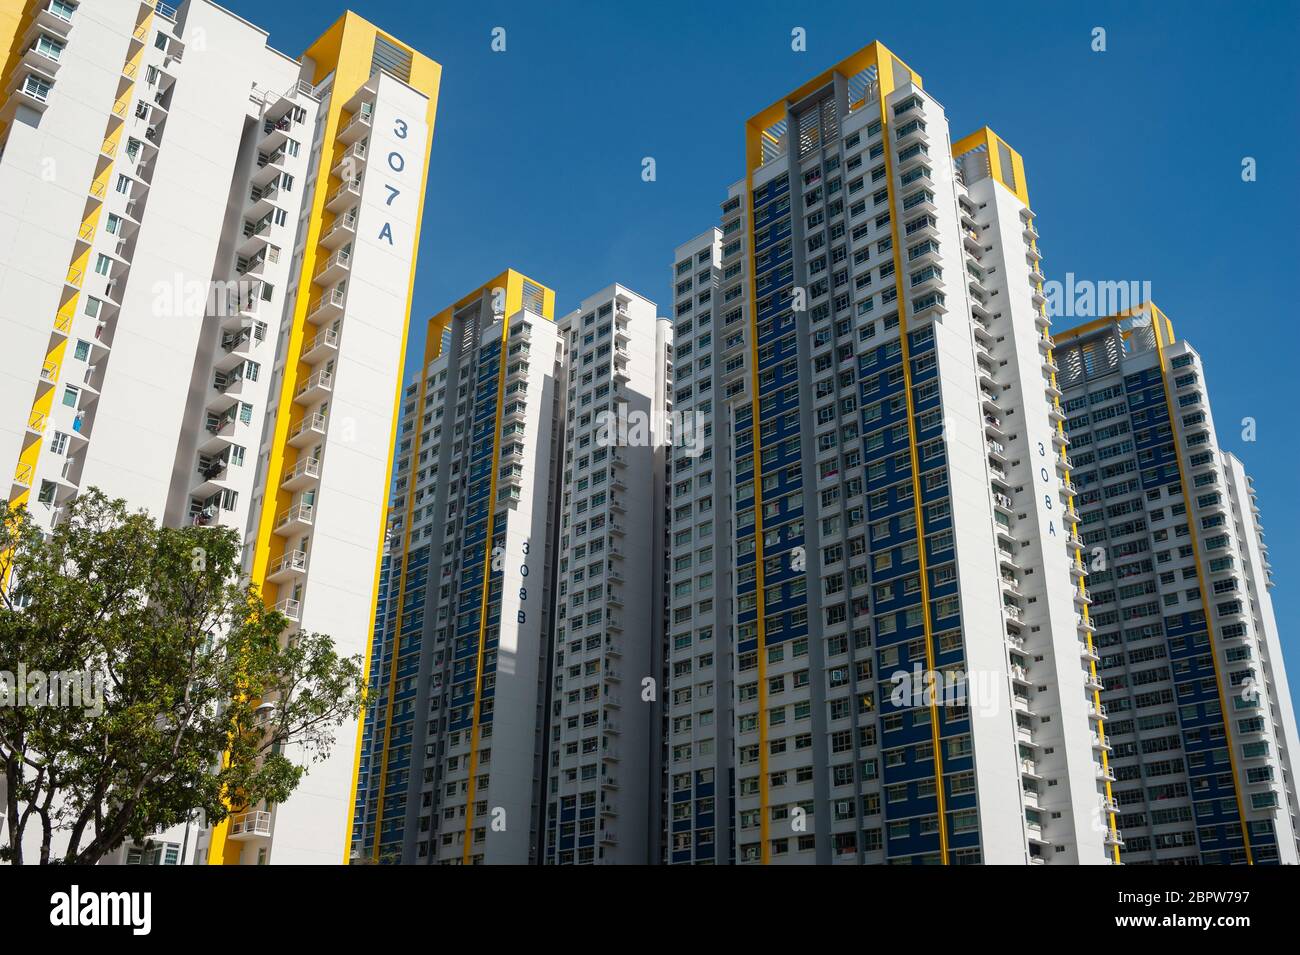 09.05.2020, Singapour, République de Singapour, Asie - vue de nouveaux immeubles d'habitation publics HDB (Housing and Development Board). Banque D'Images